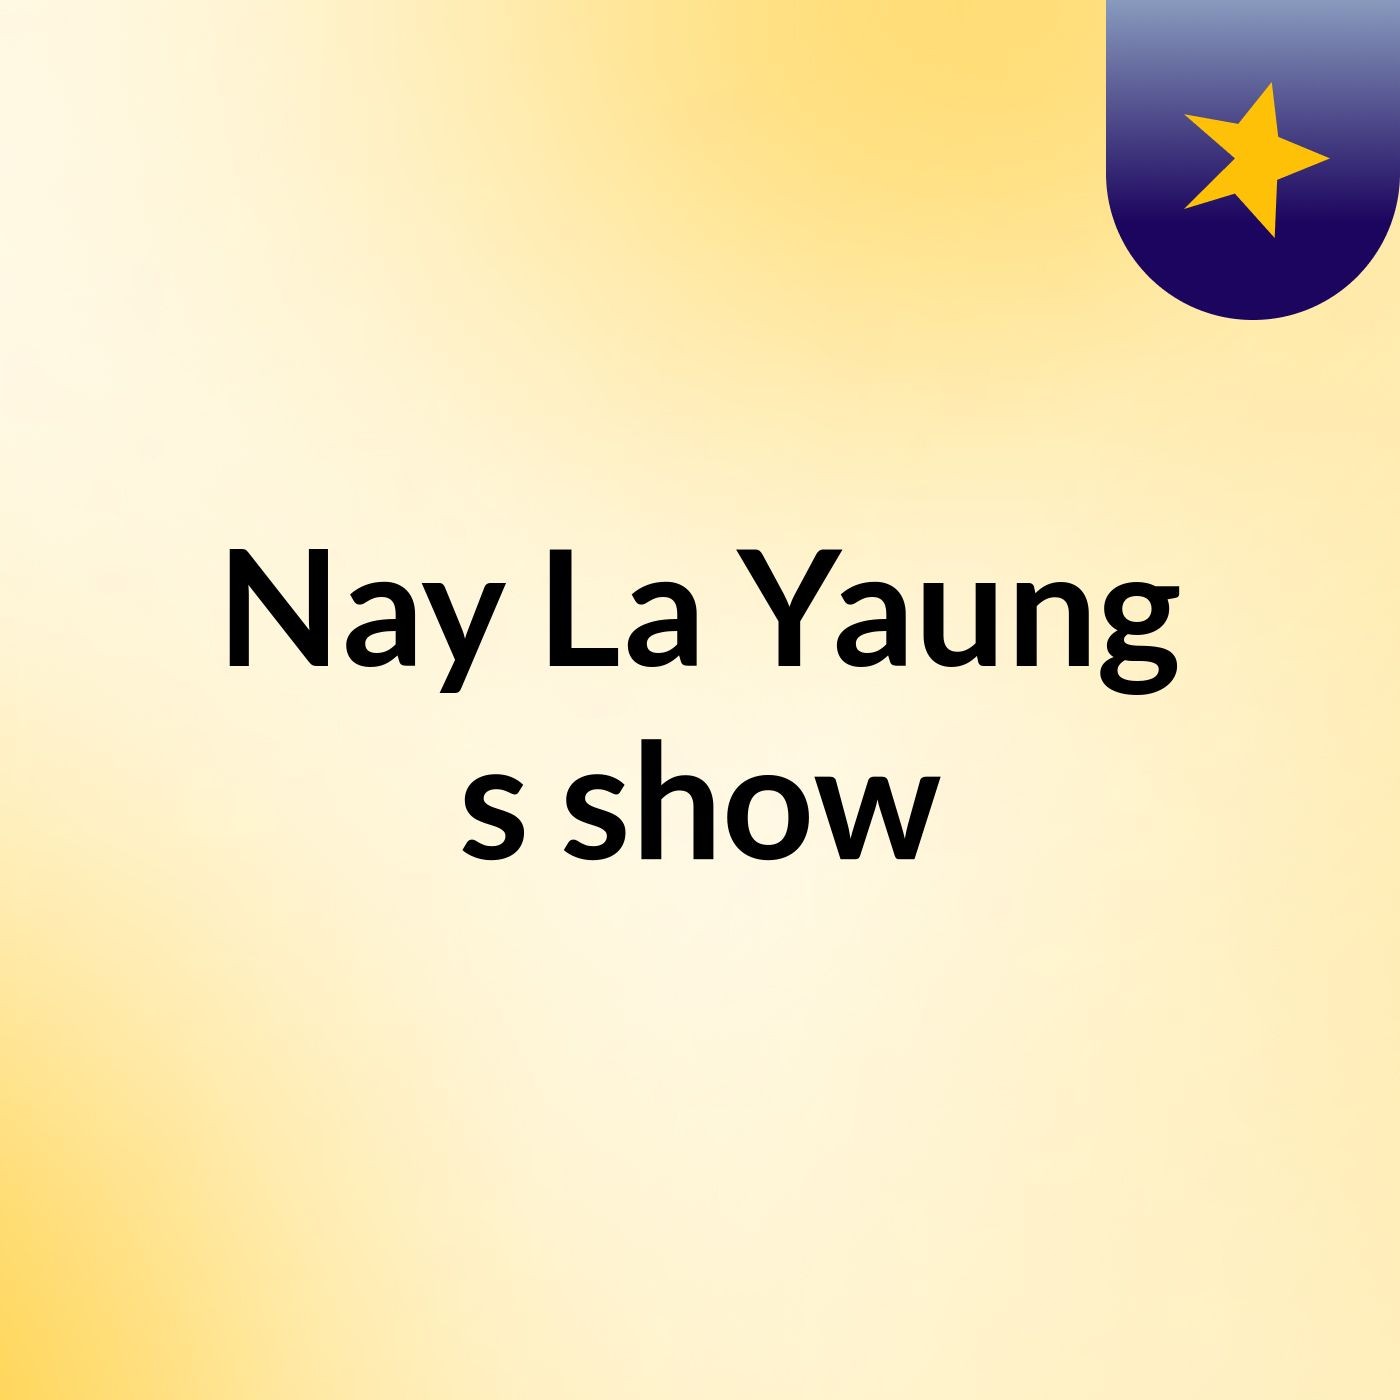 Nay La Yaung's show